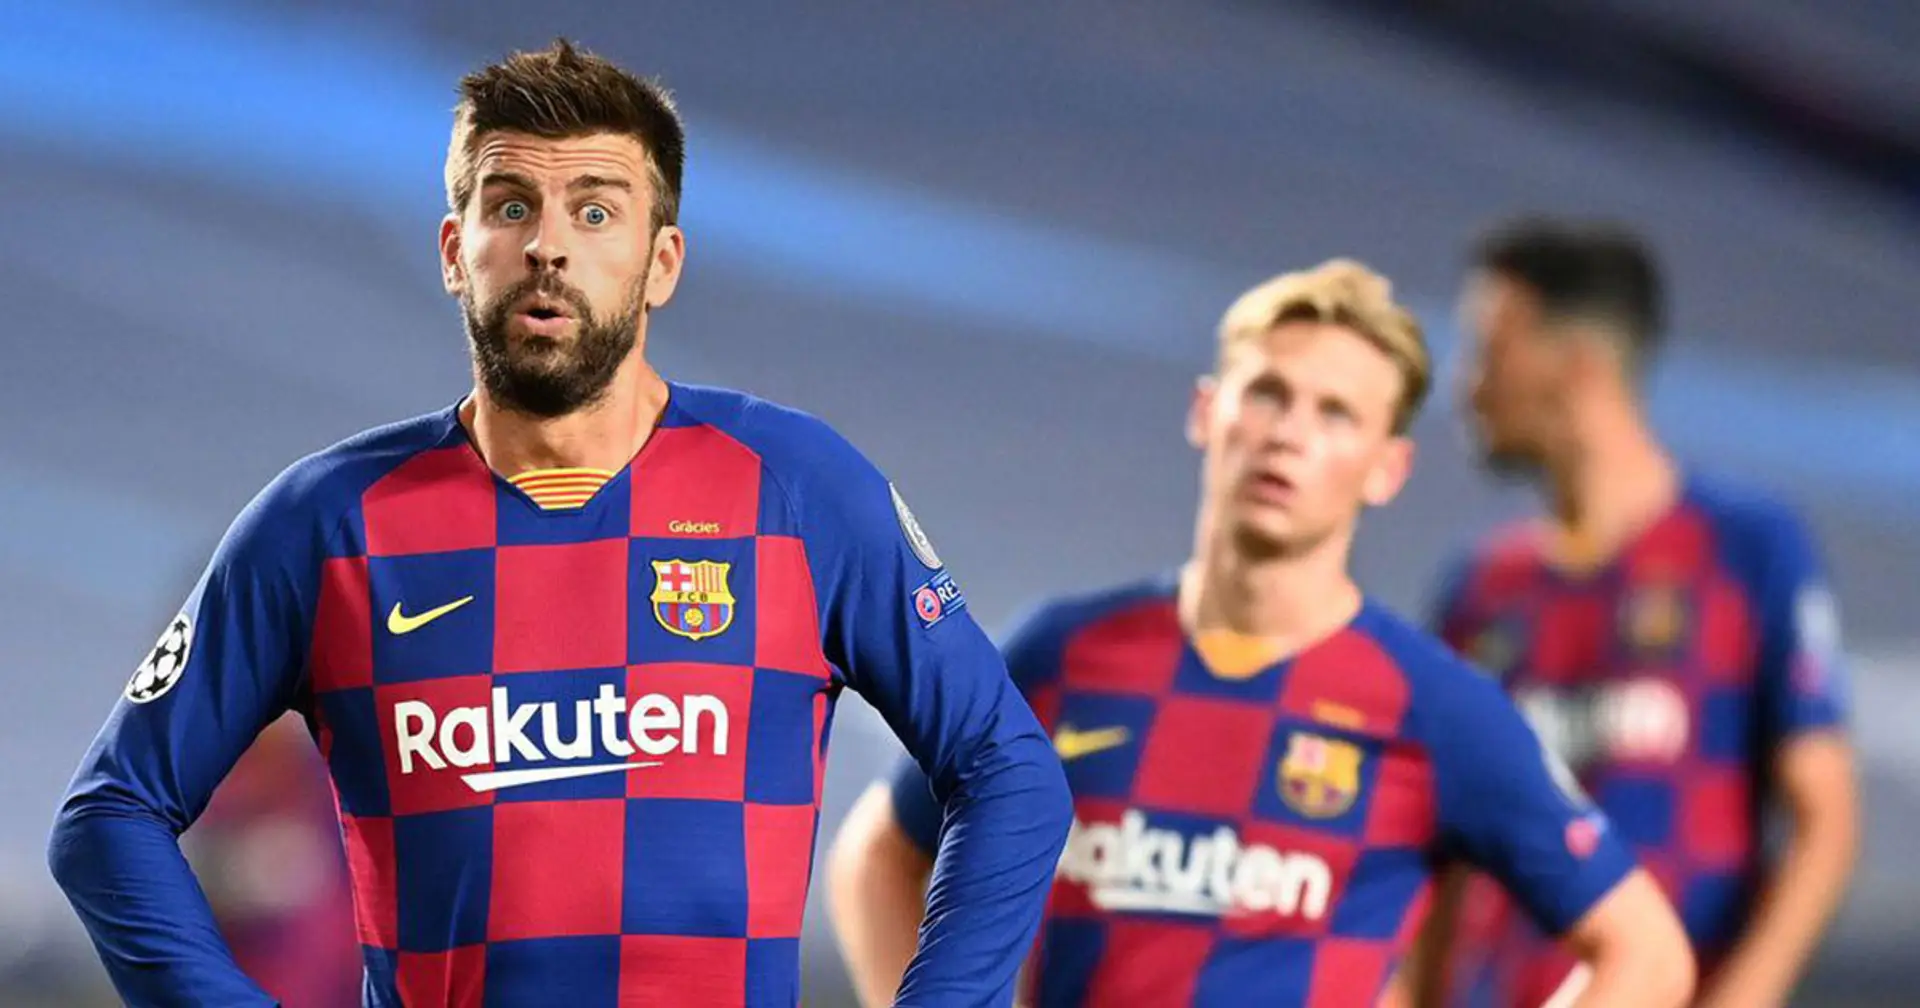 Comment redonner un second souffle à ce Barça totalement dépassé ?